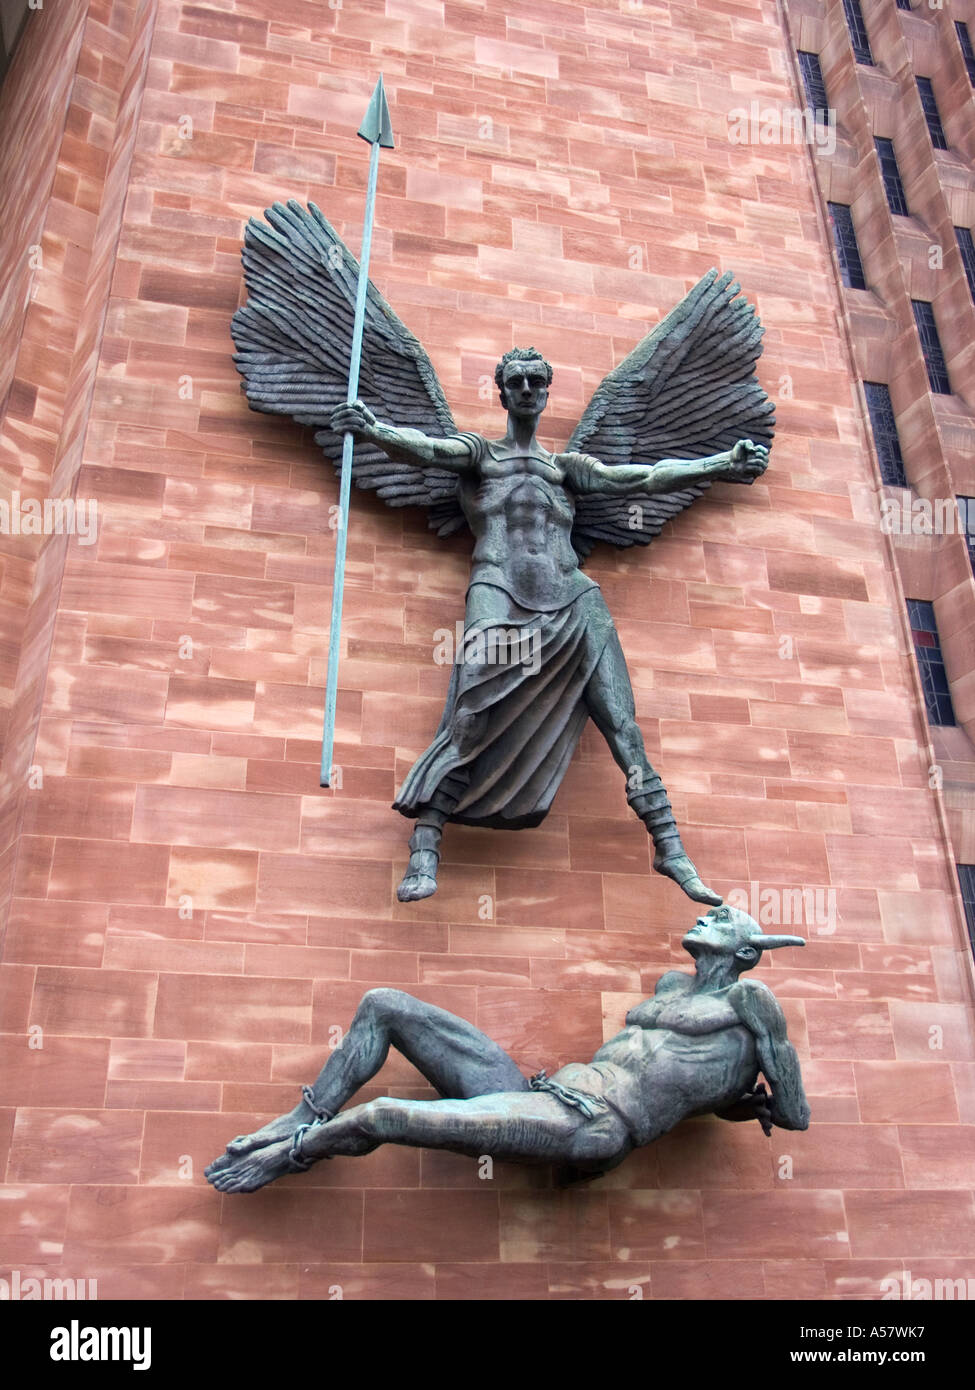 La cathédrale de Coventry sculptures sur la nouvelle cathédrale de Coventry West Midlands murs.E ngland Banque D'Images